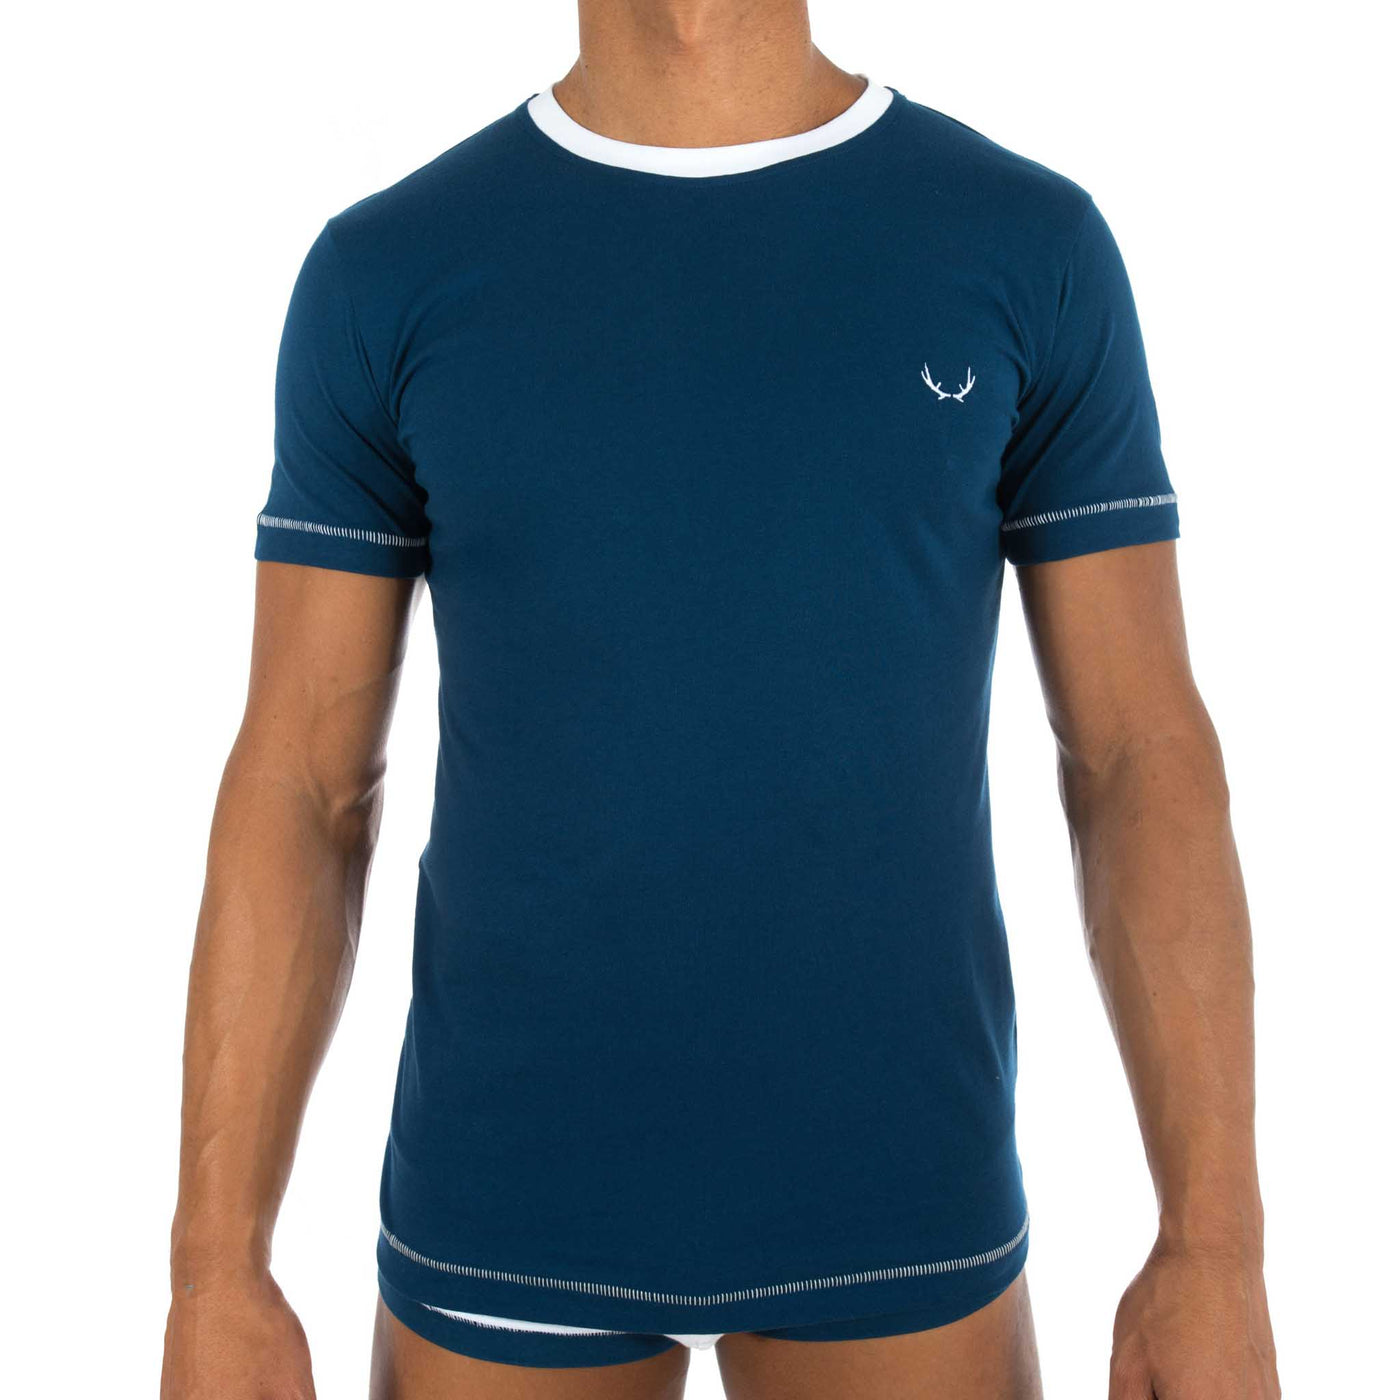 T-shirt homme col rond bleu marine en coton bio